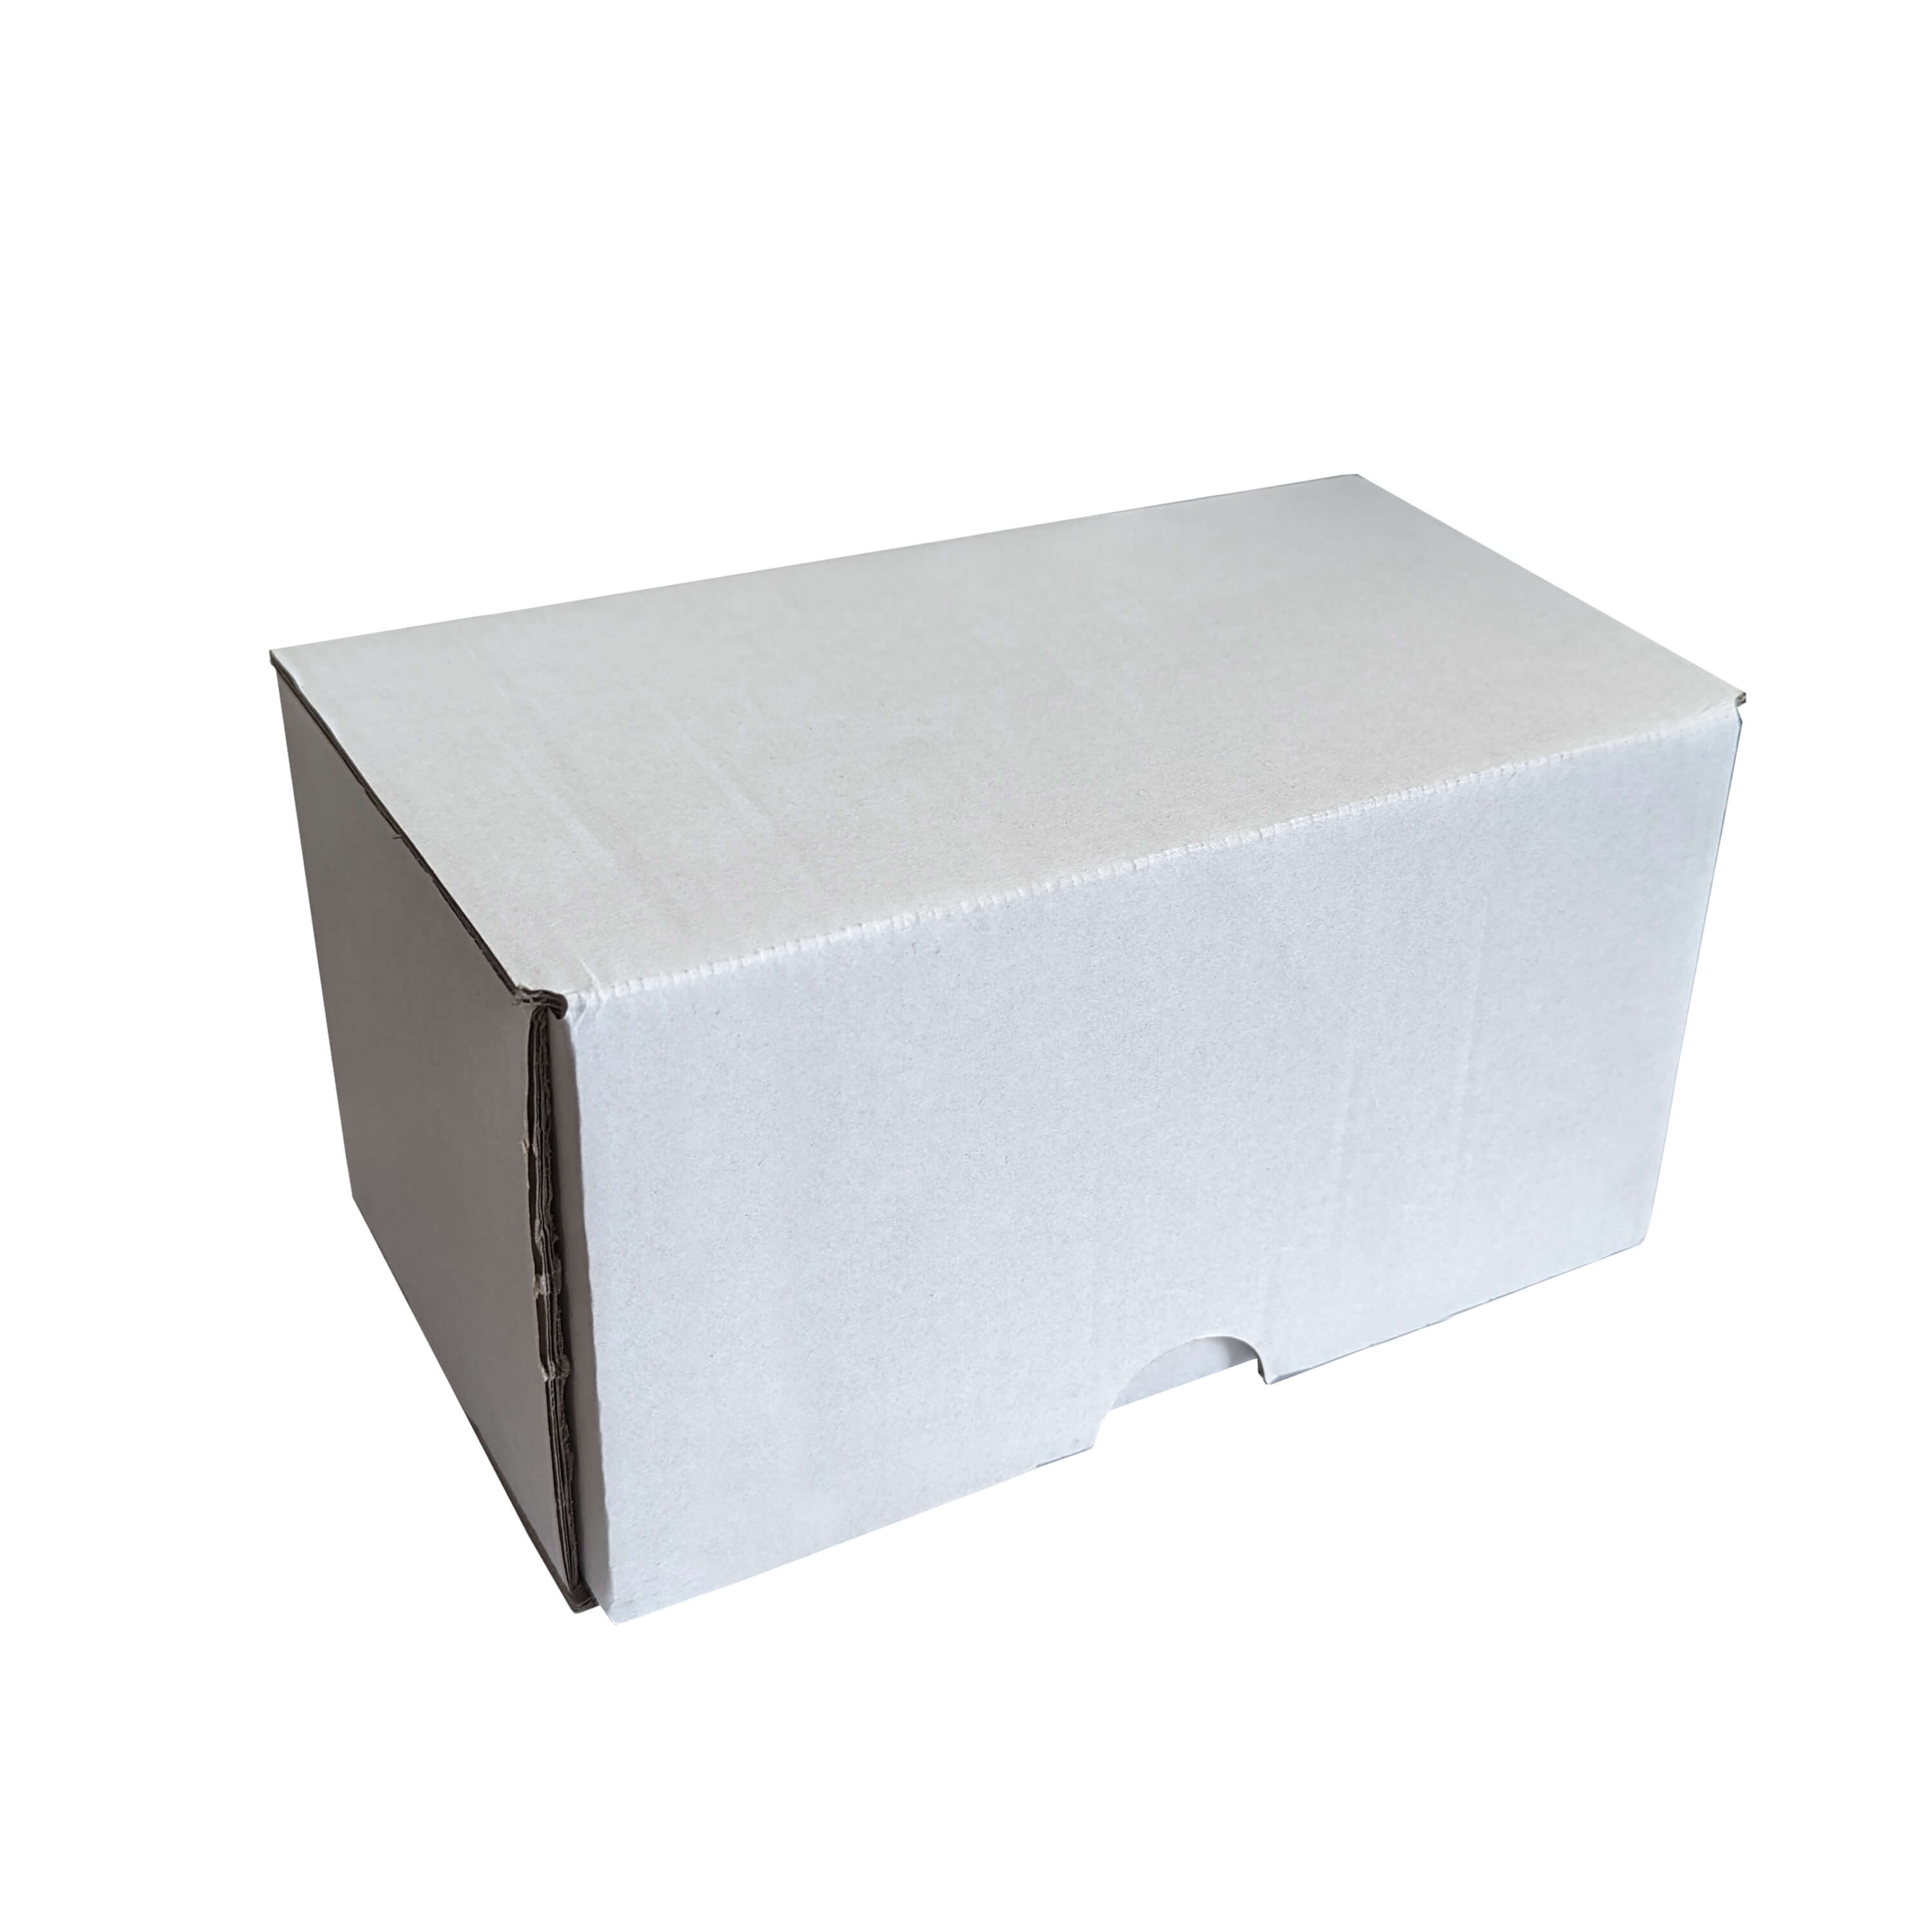 Transport Box for 2pcs 11oz Mugs - White